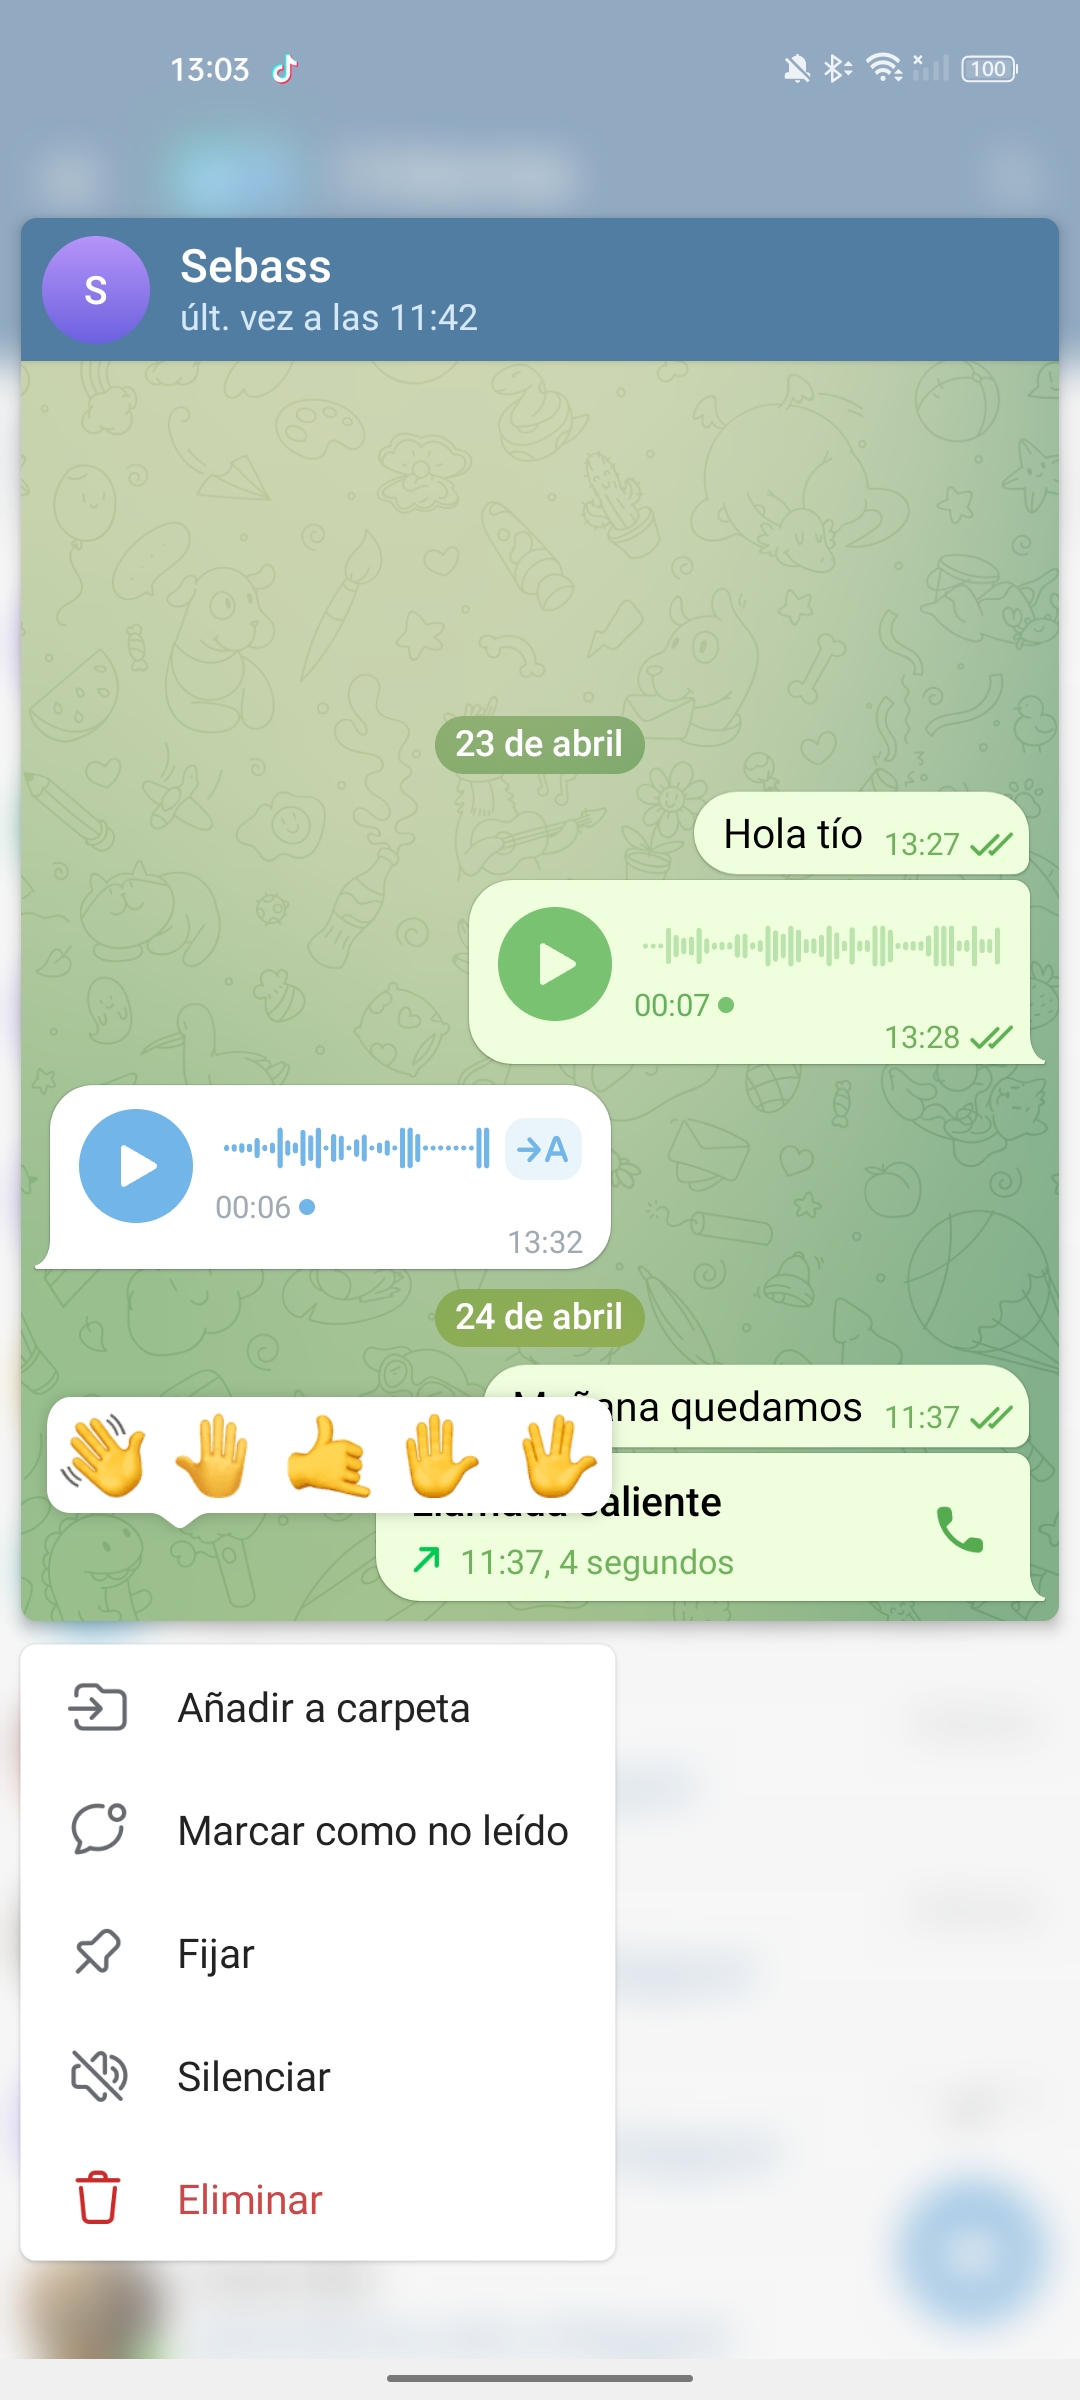 Vista previa chat Telegram